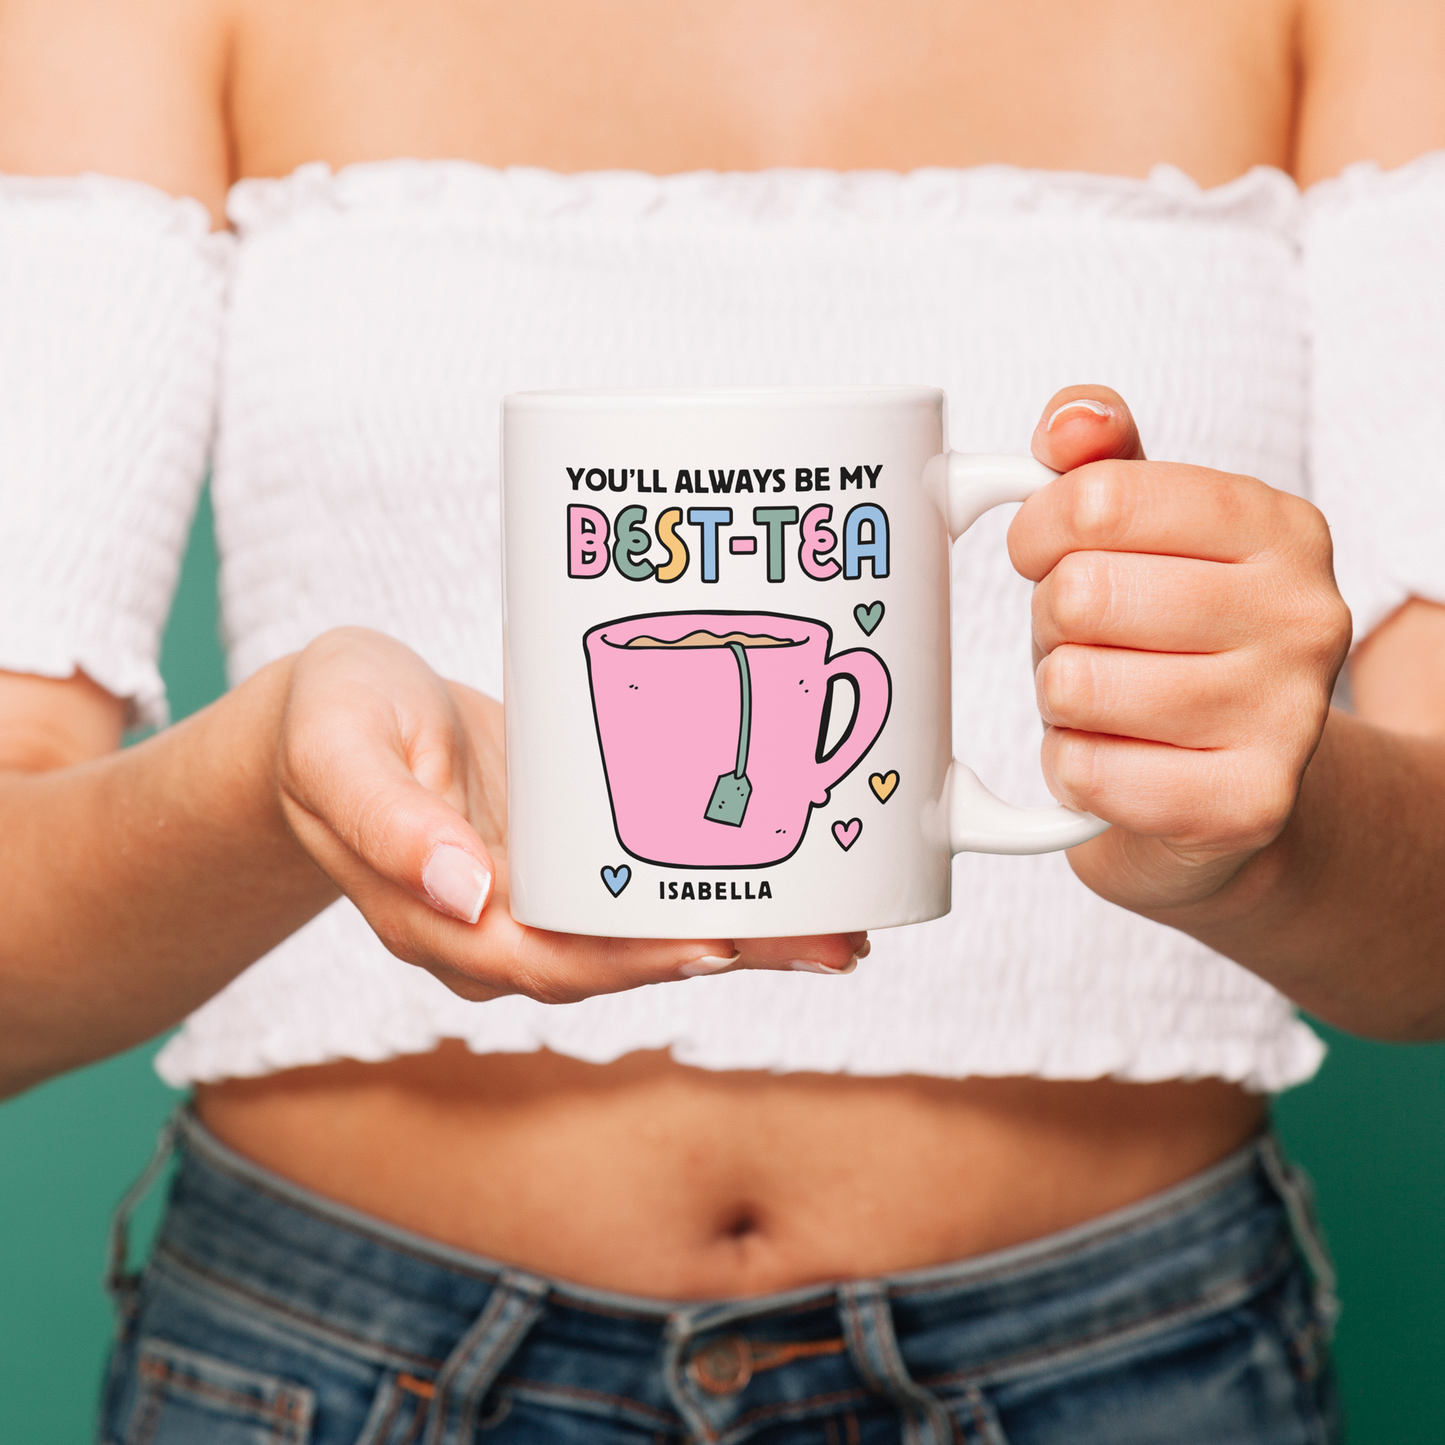 Personalised You'll Always Be My Best-Tea Mug